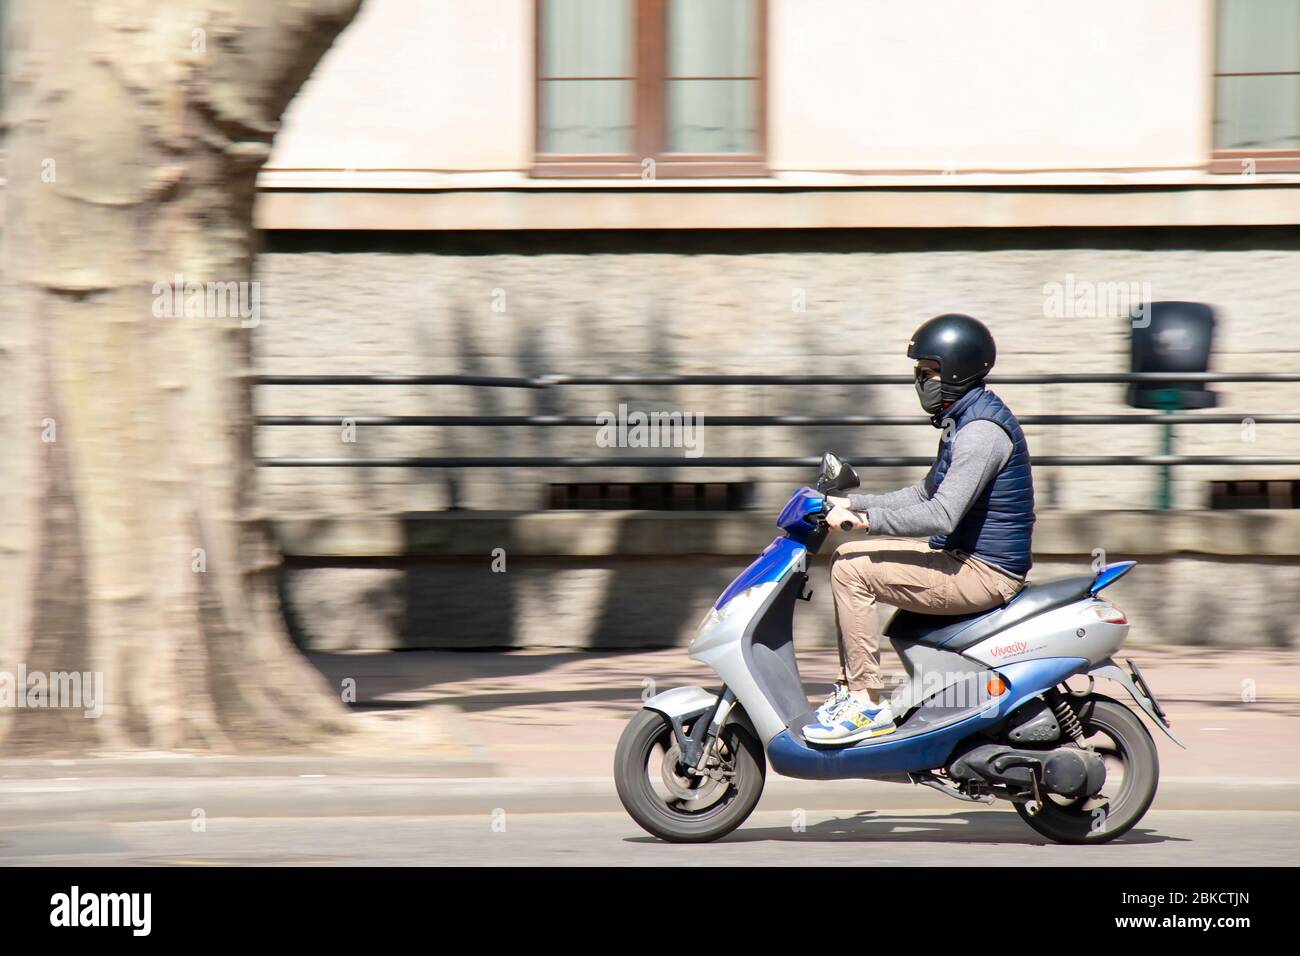 Belgrado, Serbia - 23 aprile 2020: Un giovane uomo che indossa casco, maschera facciale e occhiali da sole a bordo di una moto scooter in città Foto Stock